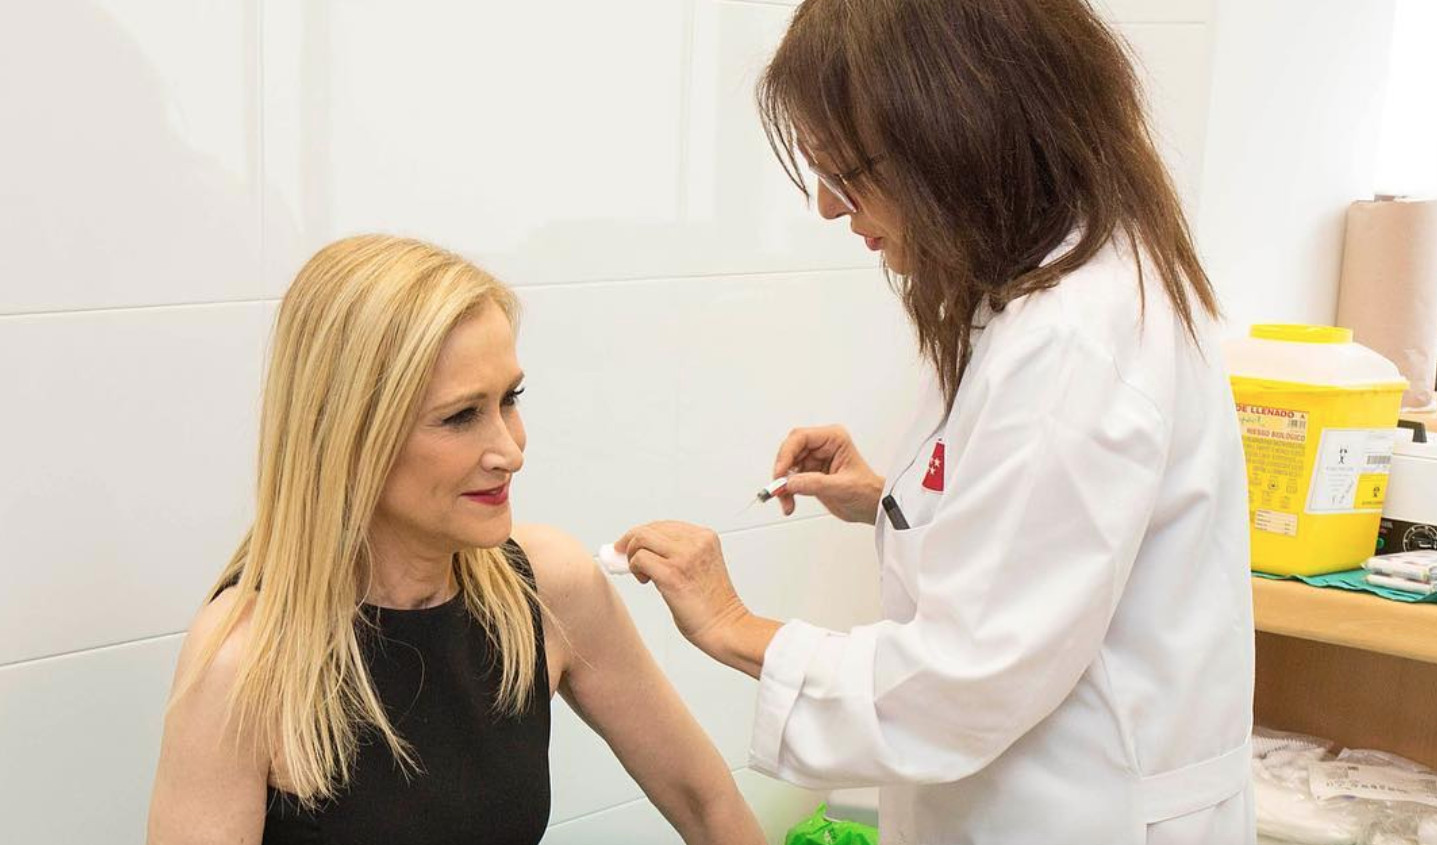 Cristina Cifuentes vacunándose antes de concursar en 'Supervivientes' / MEDIASET